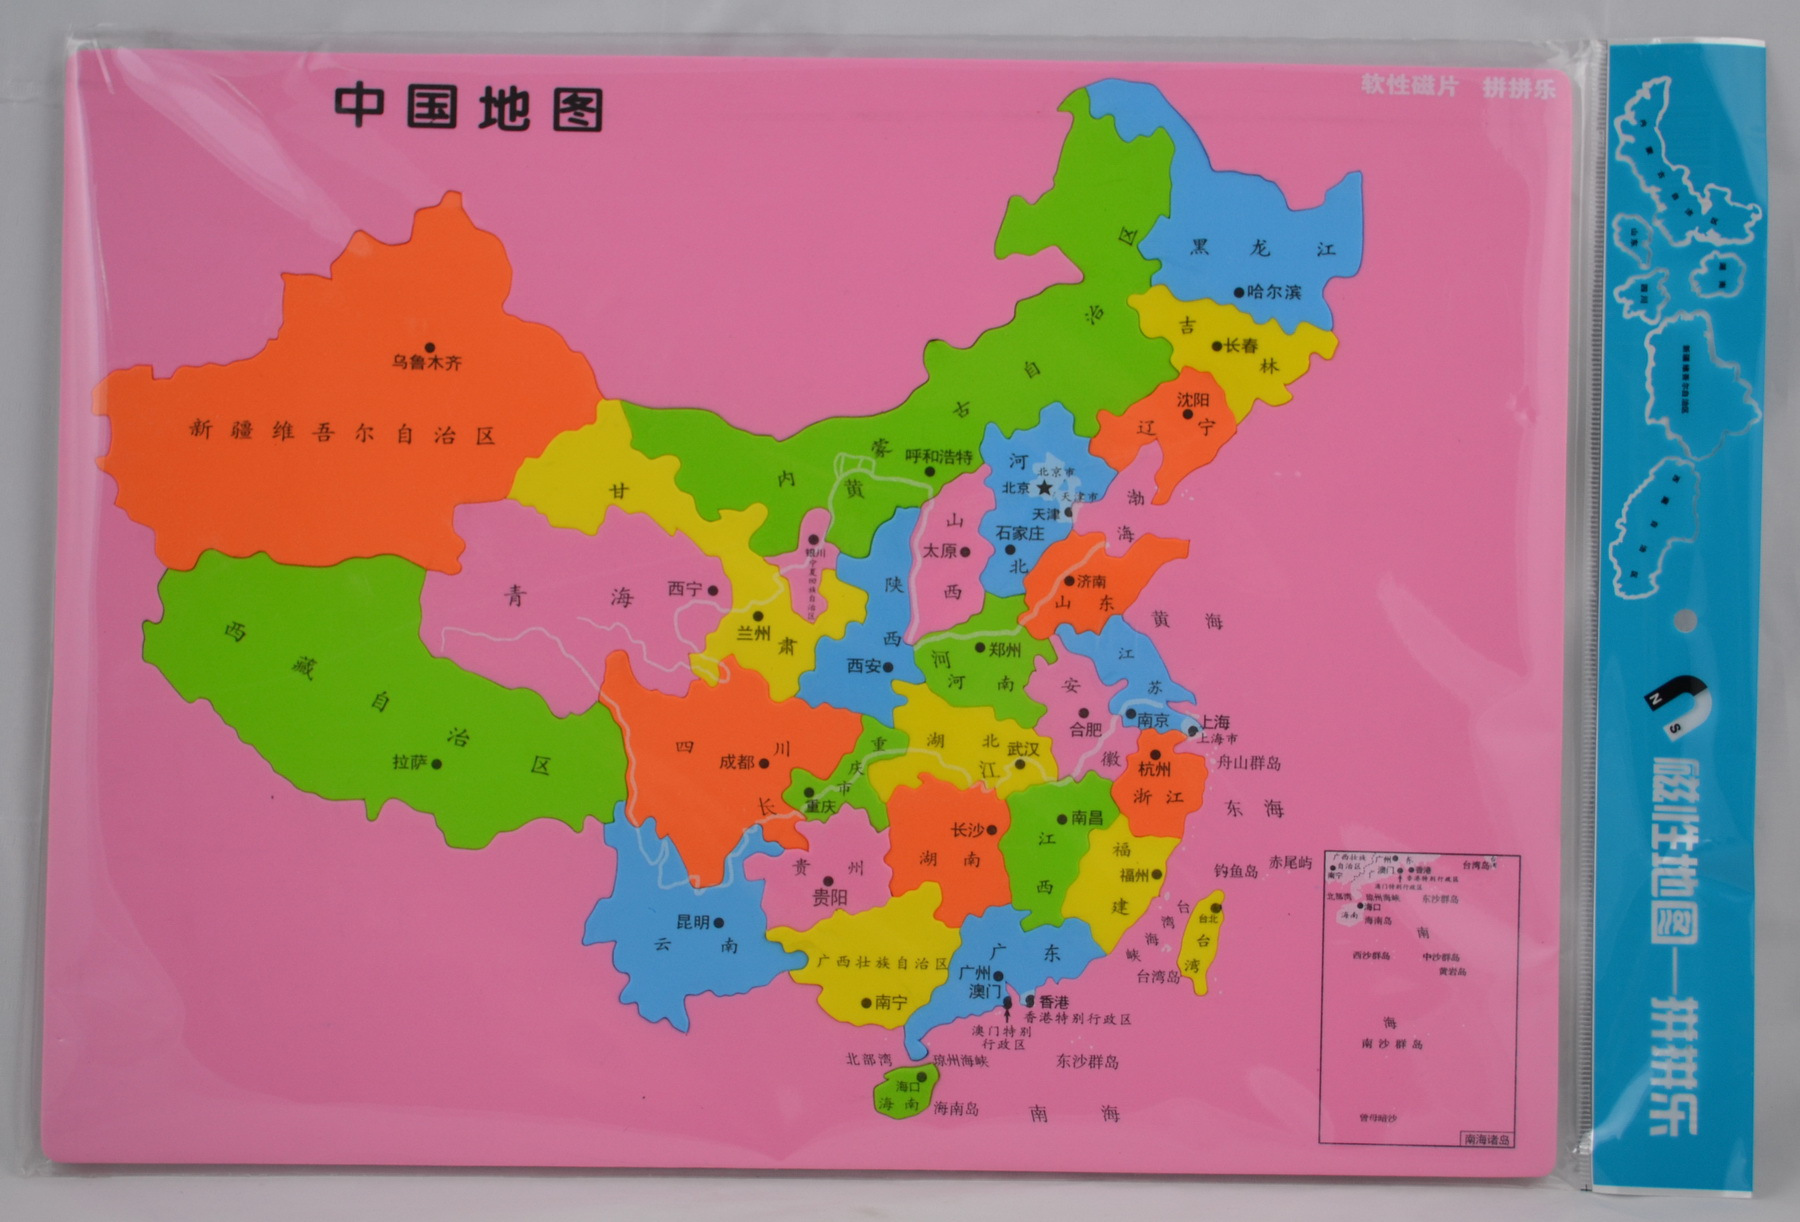 软性磁片磁贴智力拼拼乐-中国地图 正品金橙动漫拼图 gop#10dt01图片